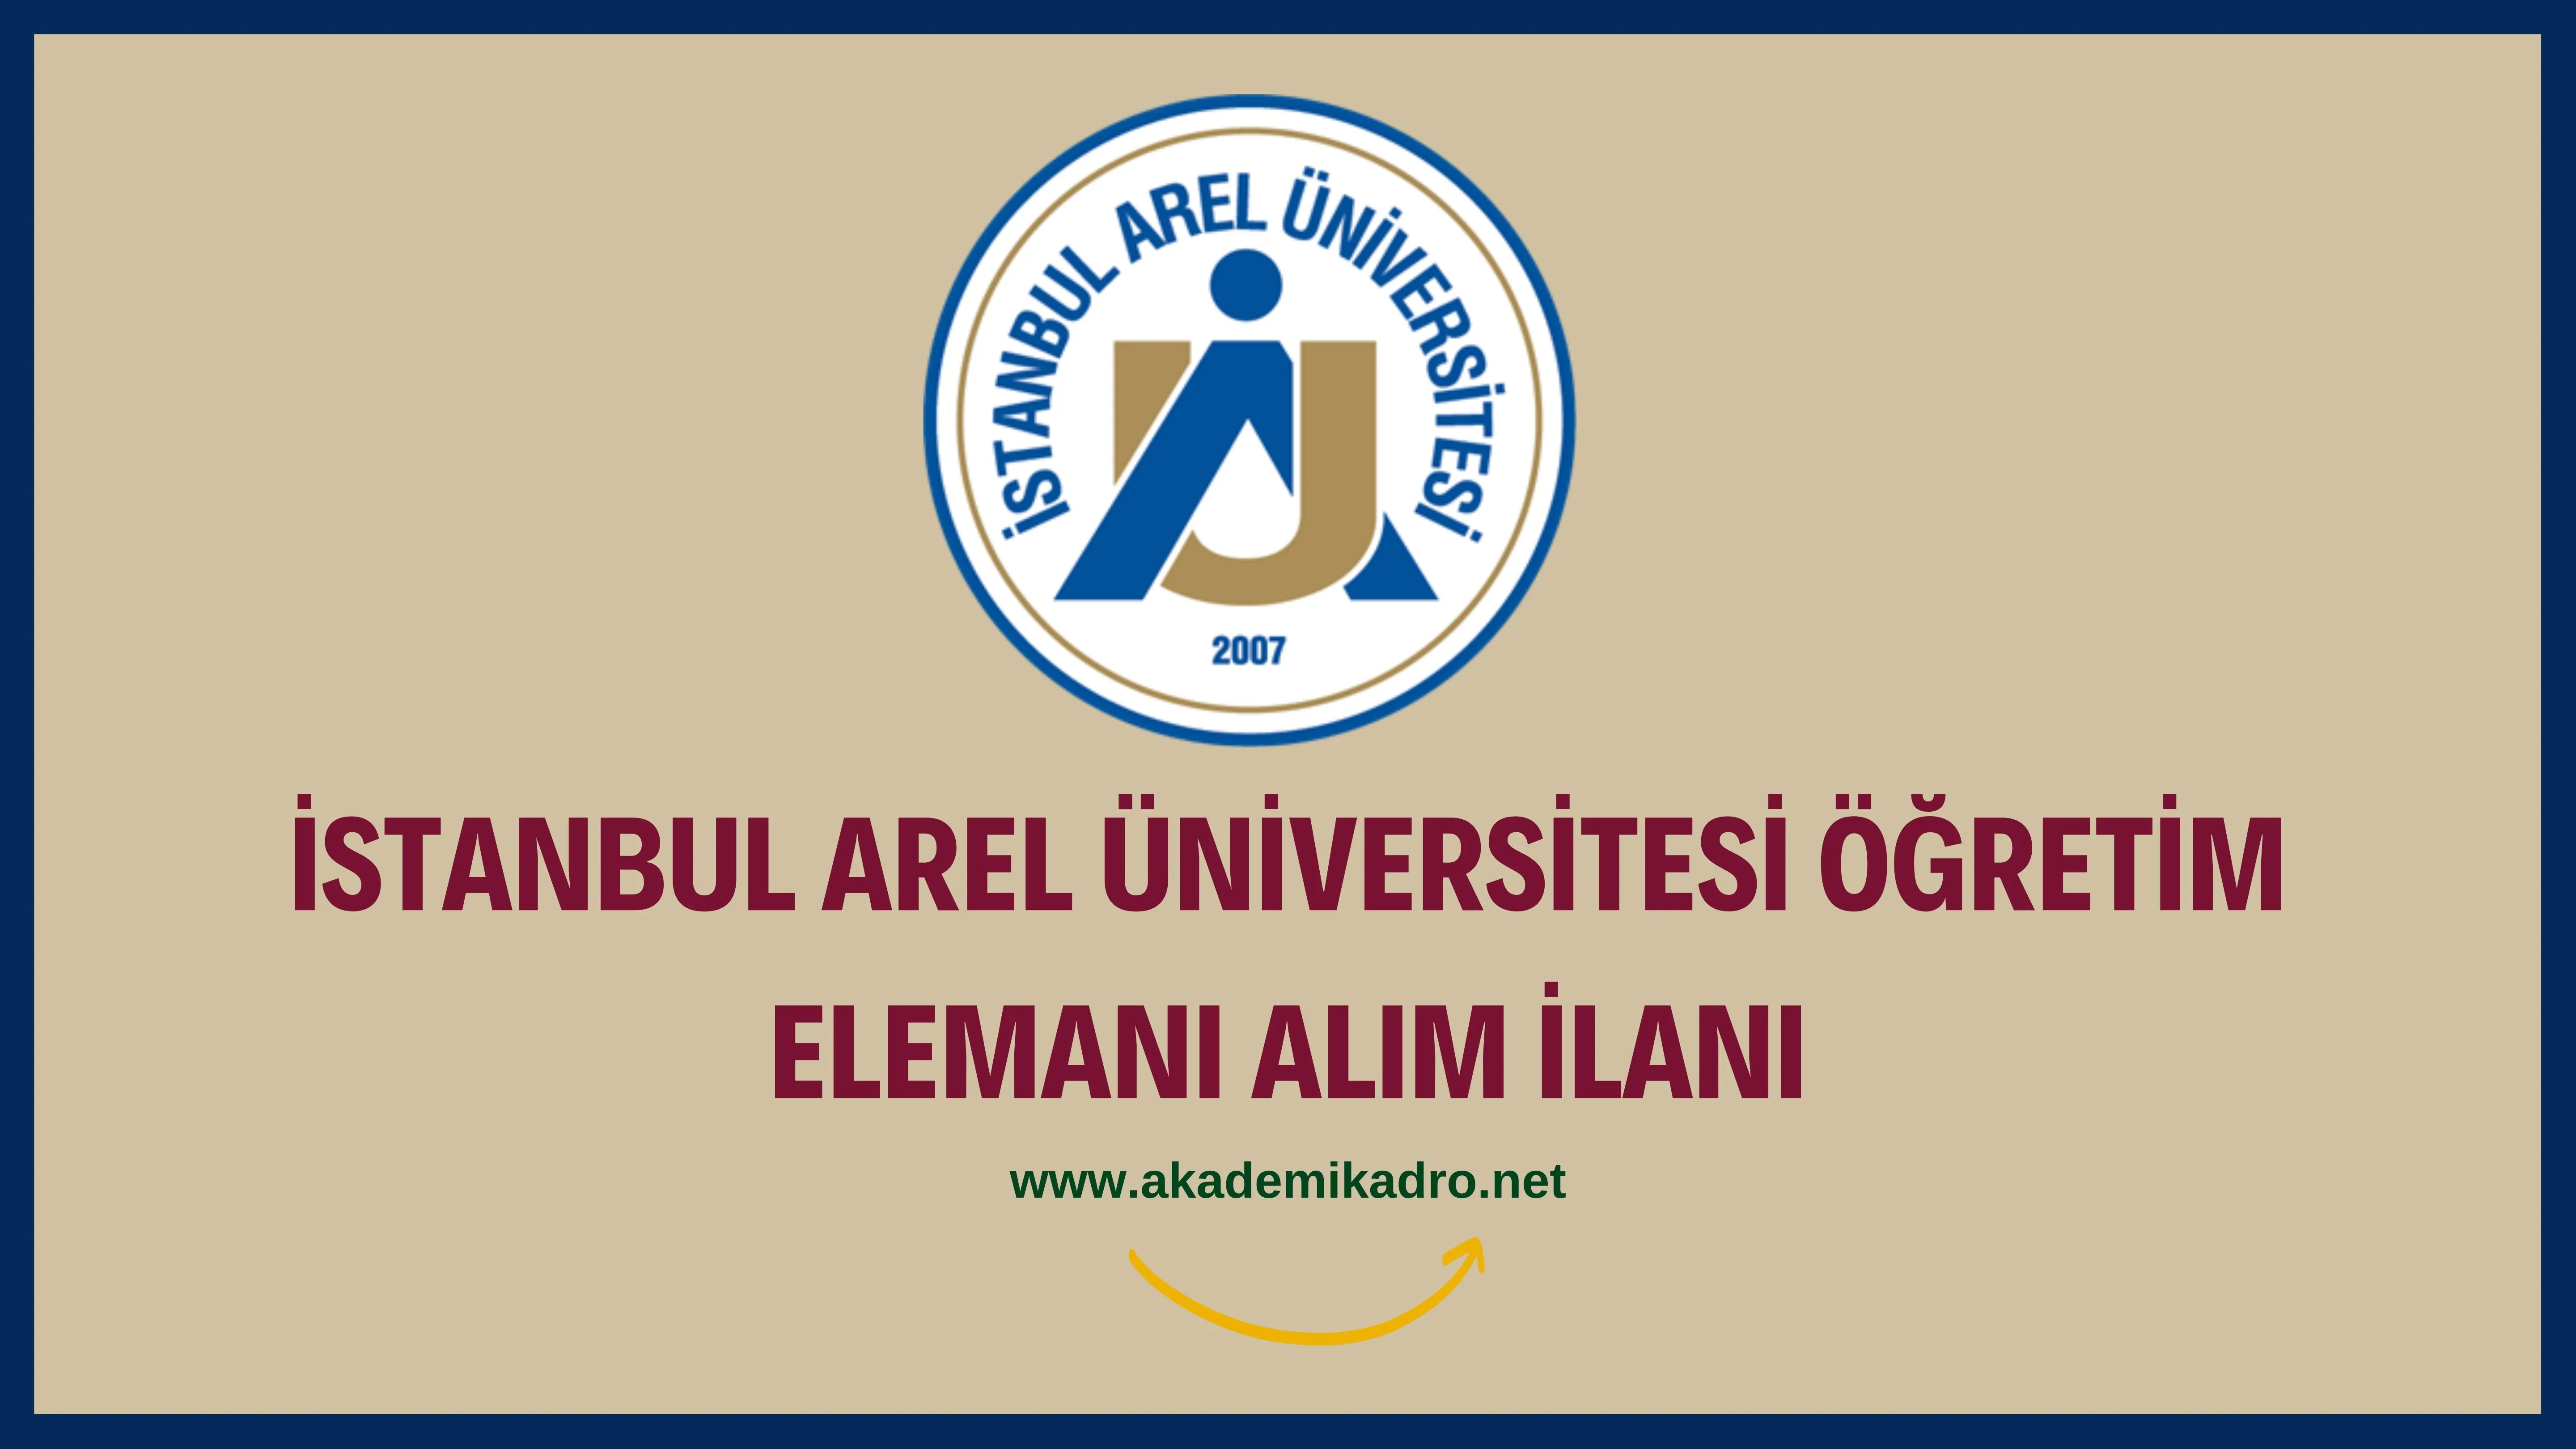 İstanbul Arel Üniversitesi 27 Öğretim üyesi, 20 Öğretim Görevlisi ve 7 Araştırma görevlisi alacaktır. Son başvuru tarihi 02 Şubat 2023